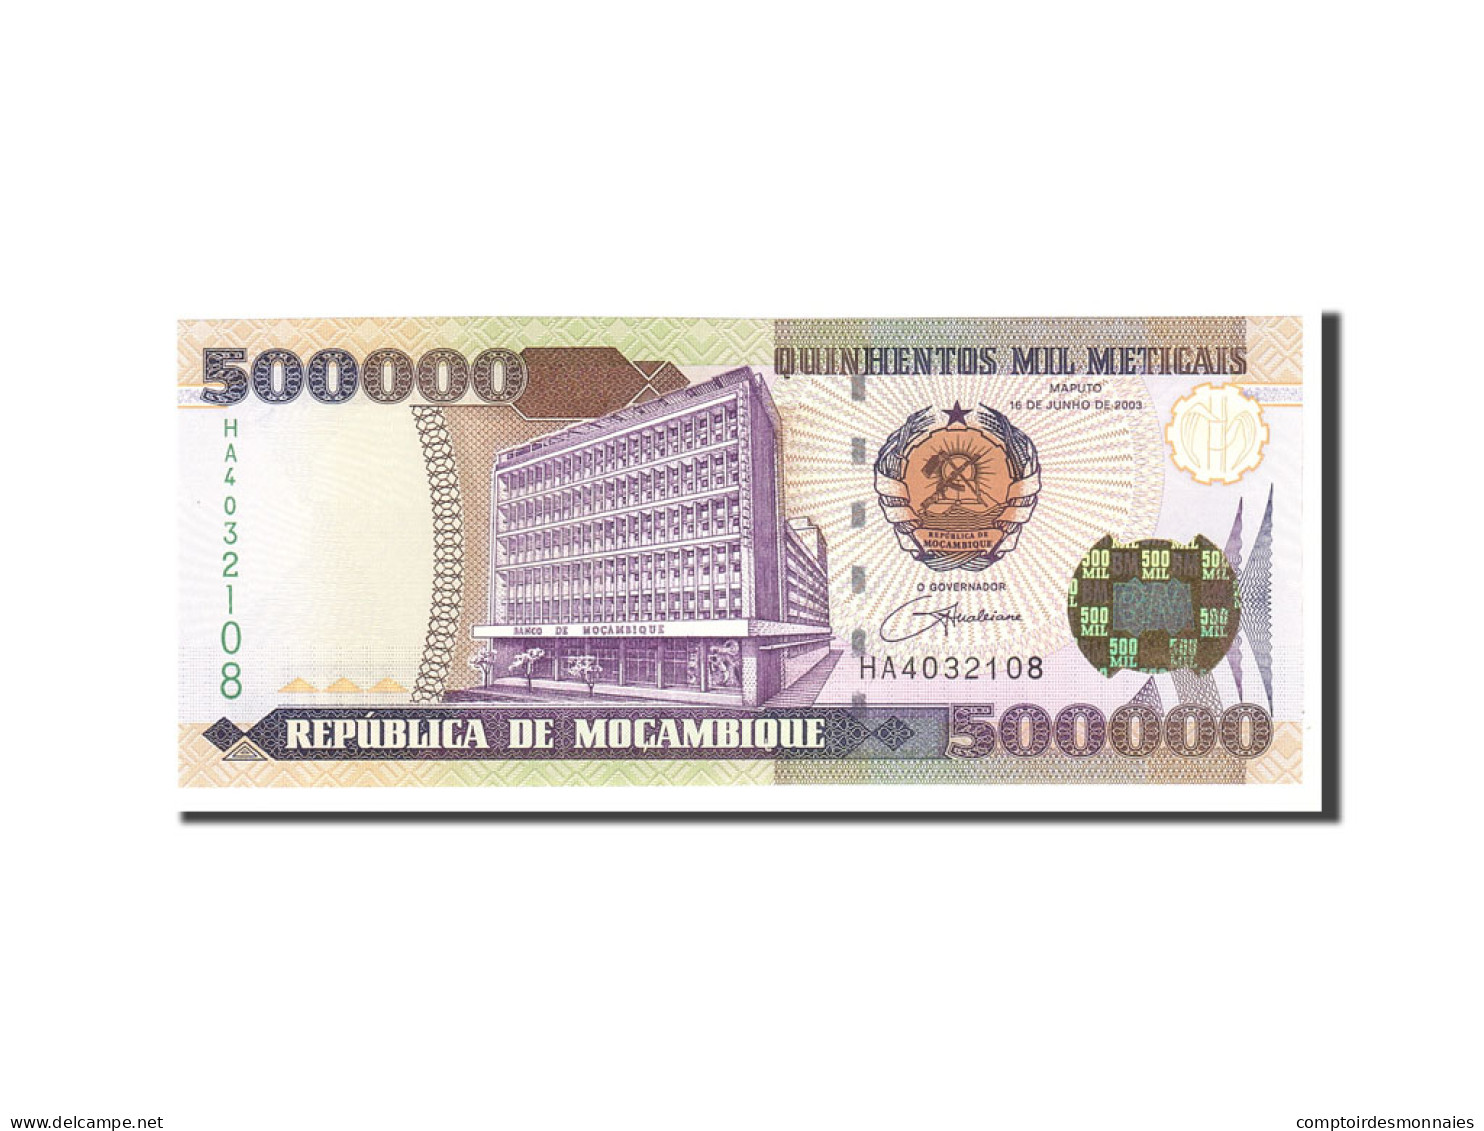 Billet, Mozambique, 500,000 Meticais, 2003, 2003-06-16, KM:142, NEUF - Mozambico